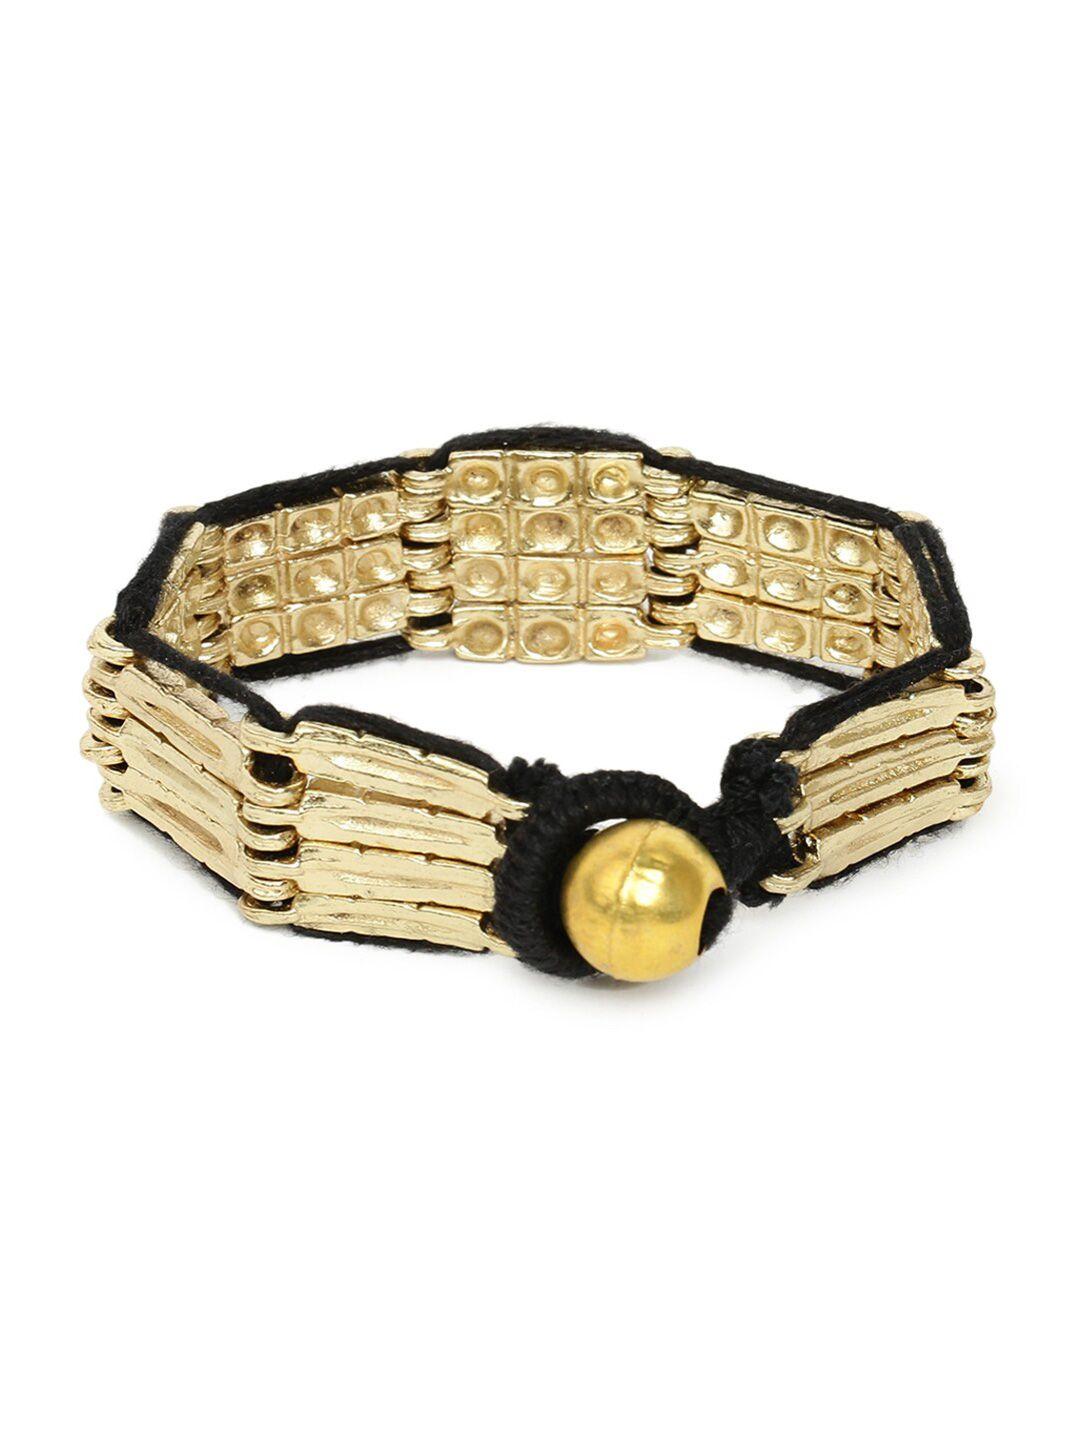 fabindia-women-gold-toned-&-black-bangle-style-bracelet